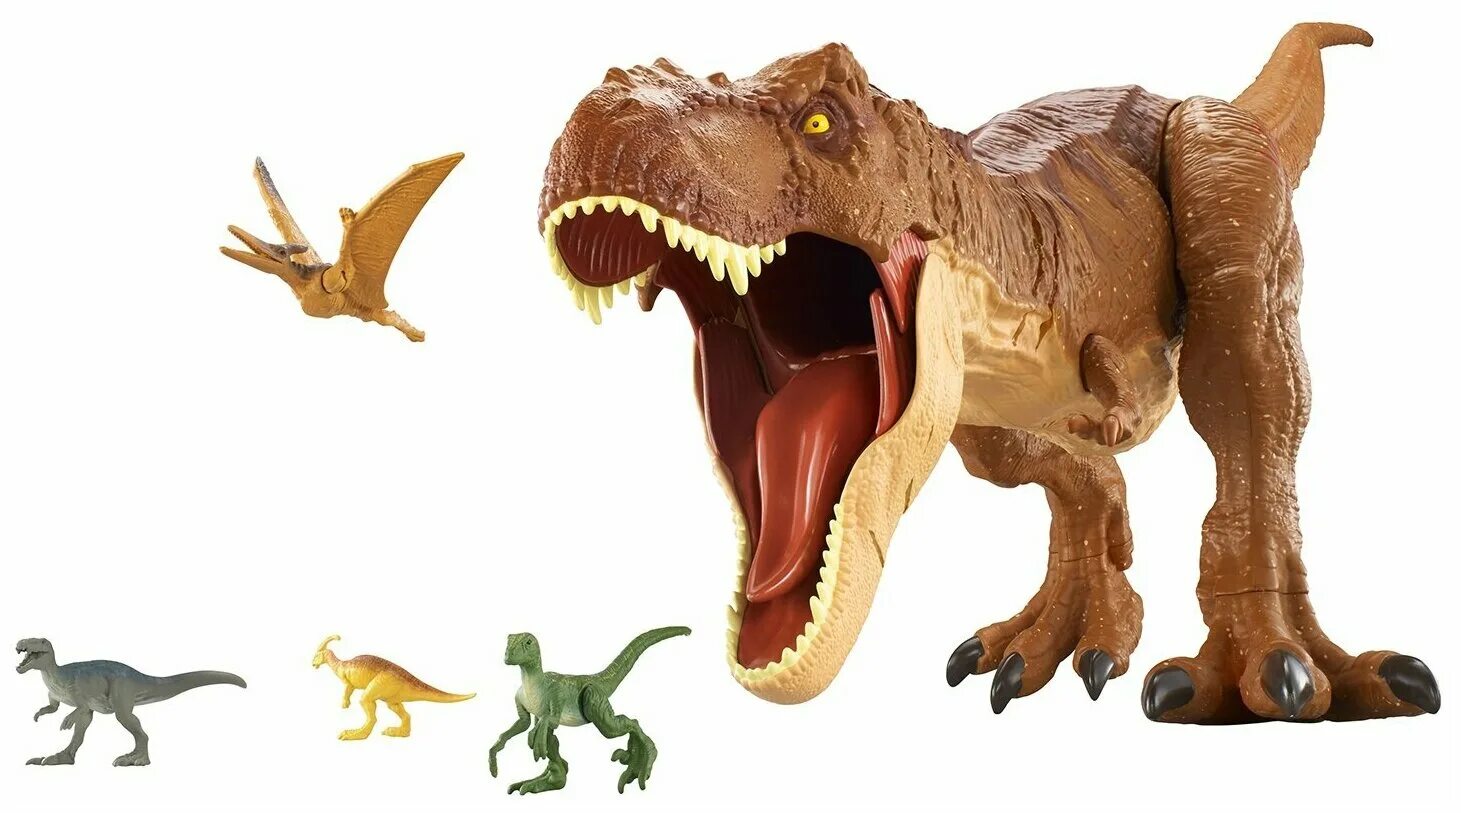 Mattel Jurassic World fmm63 колоссальный Тиранозавр рекс. Игрушка Jurassic World t-Rex. Фигурка Mattel Jurassic World супер колоссальный Тираннозавр рекс fmm63, 40 см. Игрушки динозавры мир Юрского периода Тиранозавр.